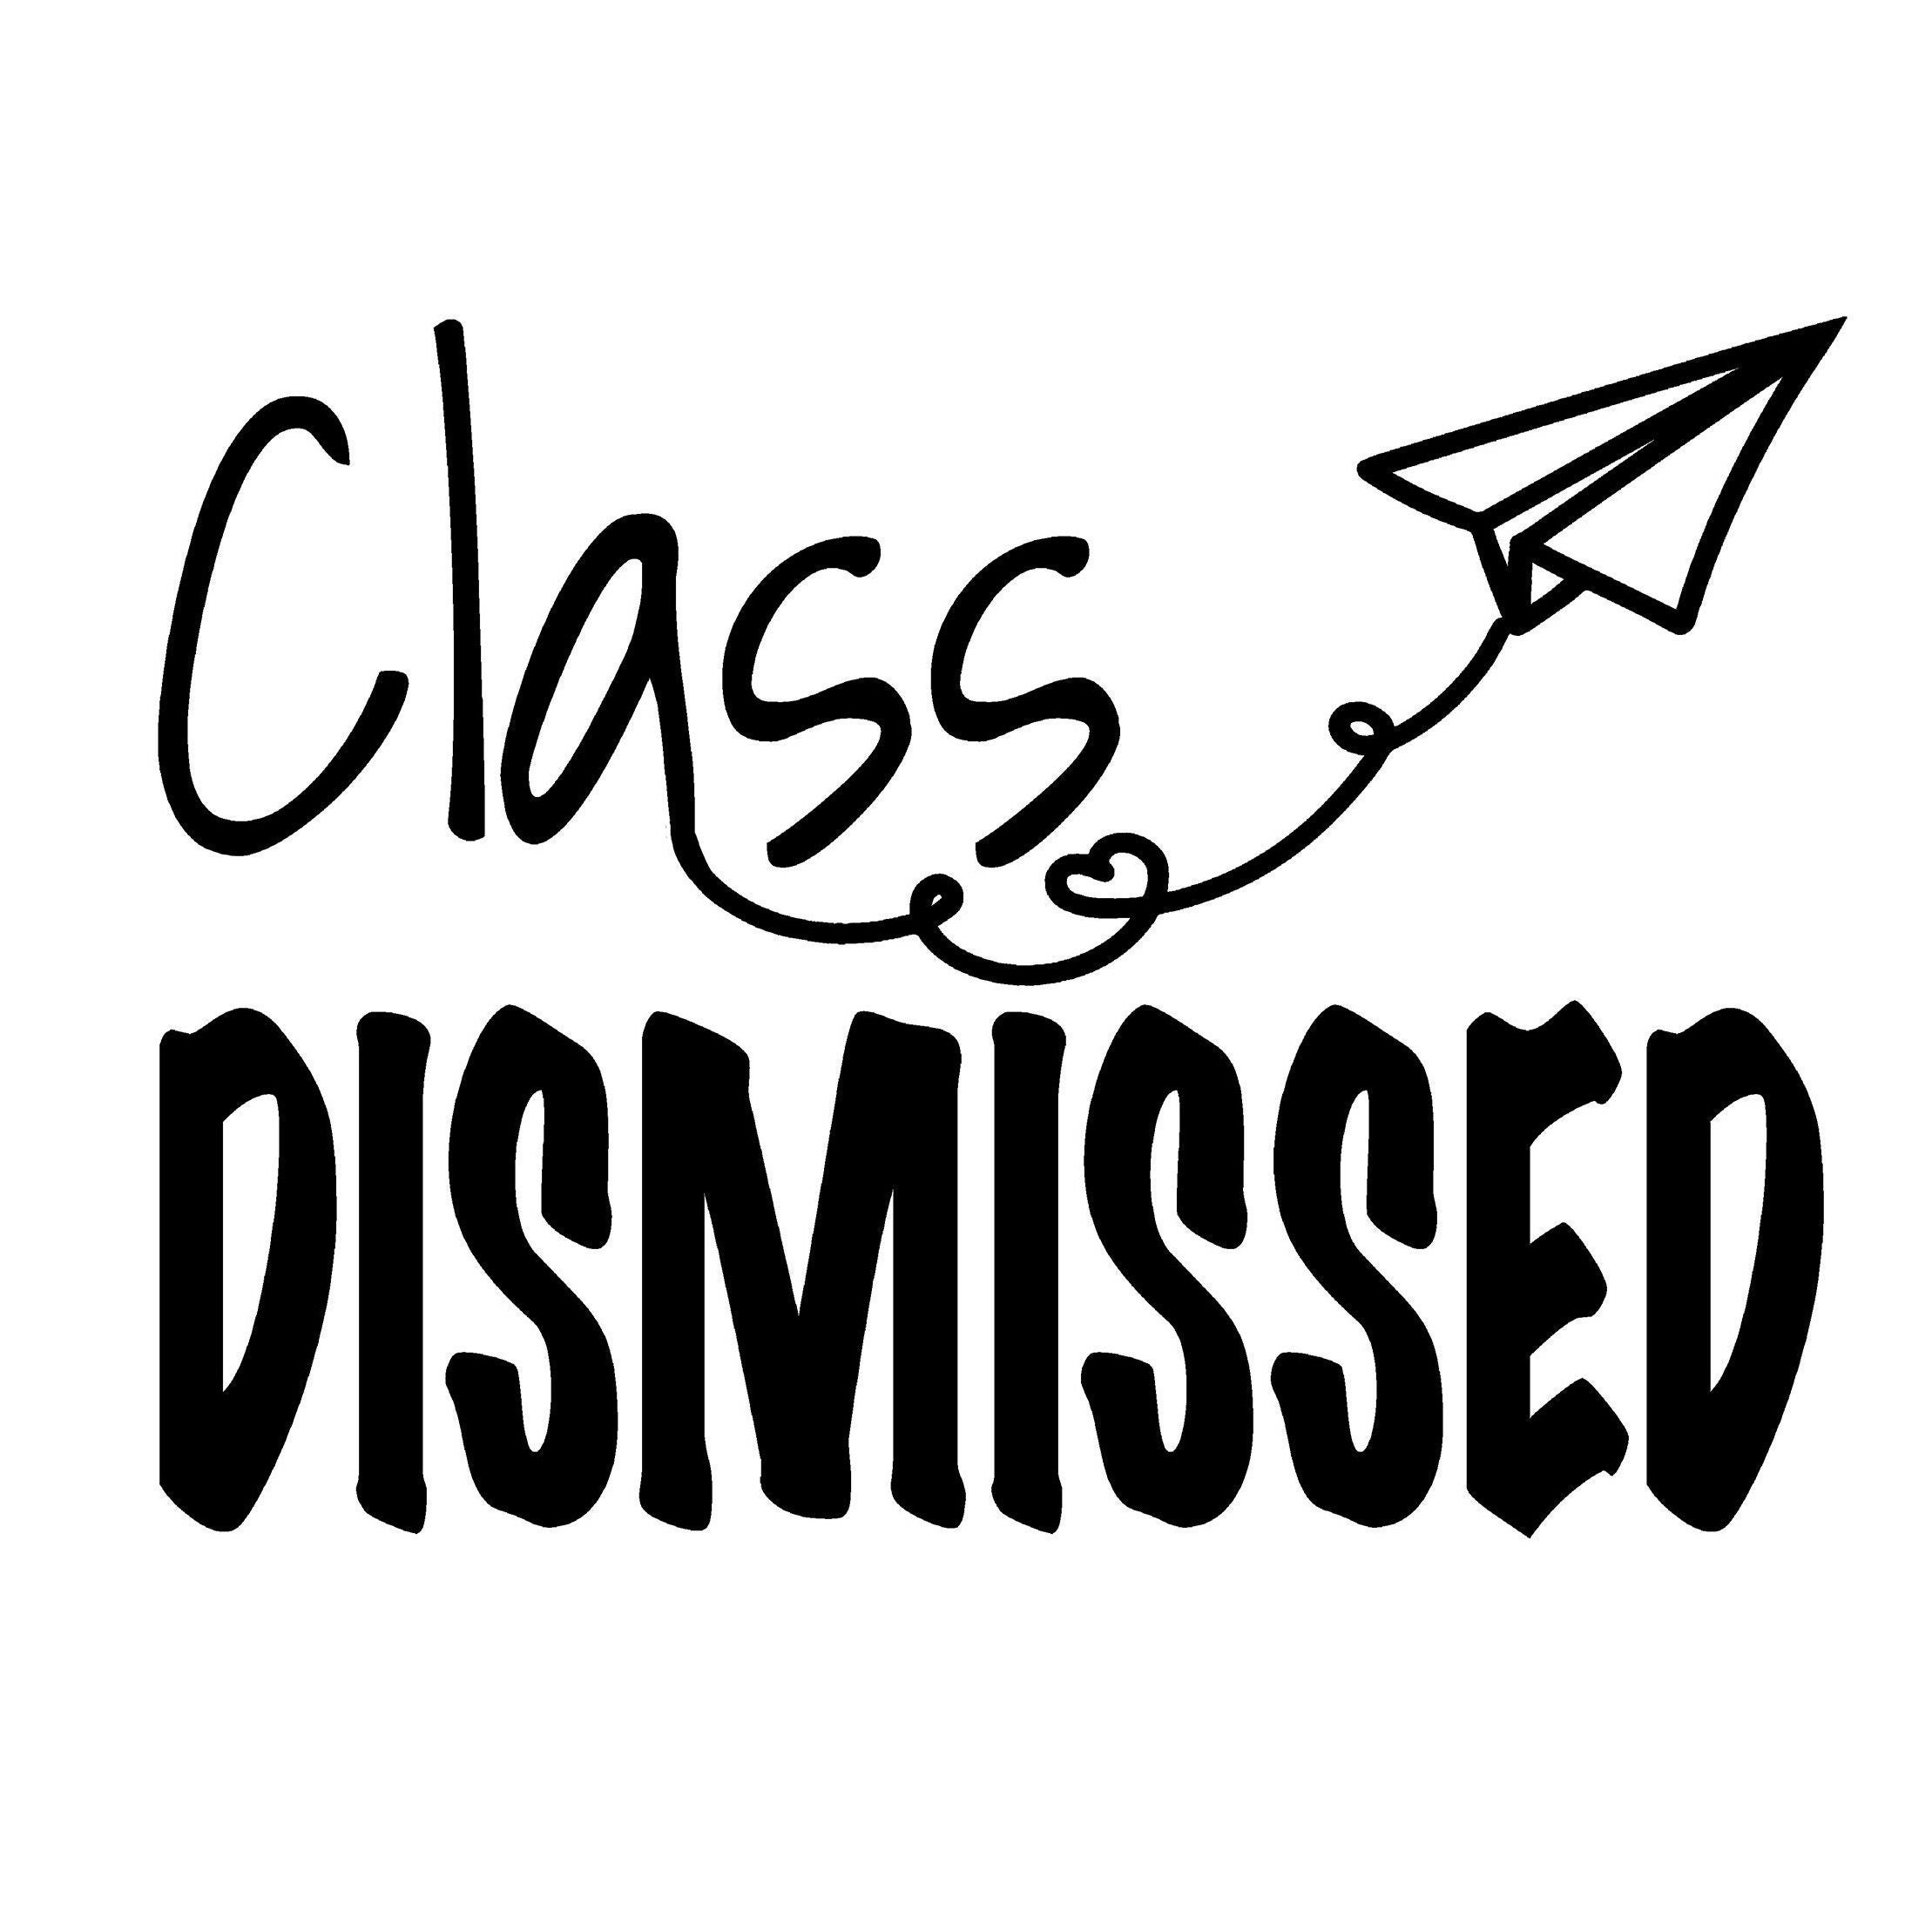 Class Dismissed